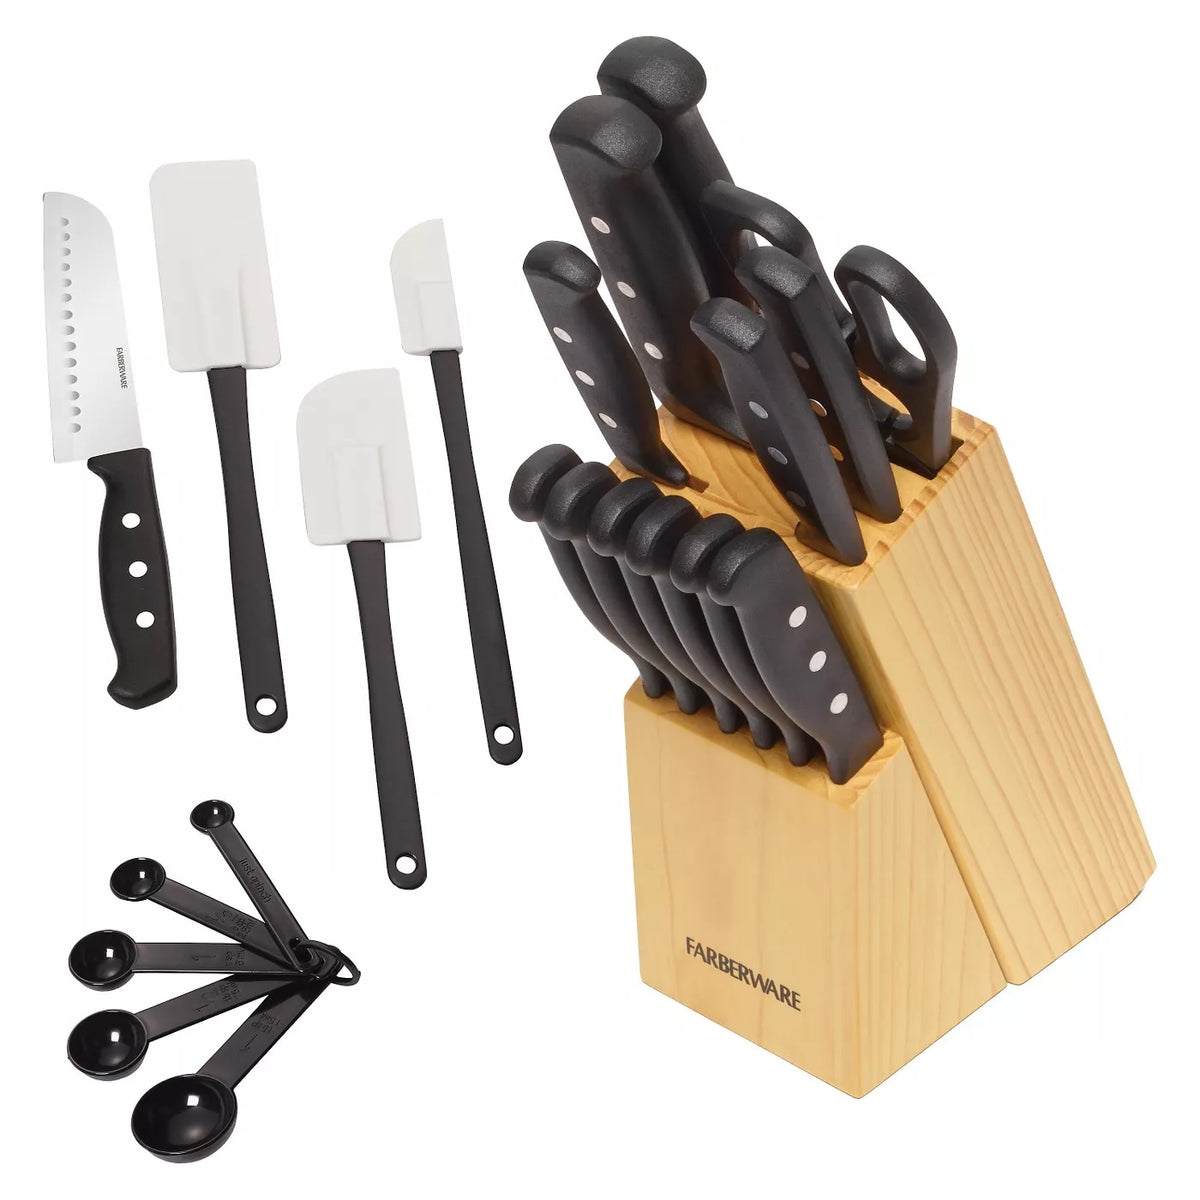 Farberware 5152501 Cutlery Set, Stainless Steel